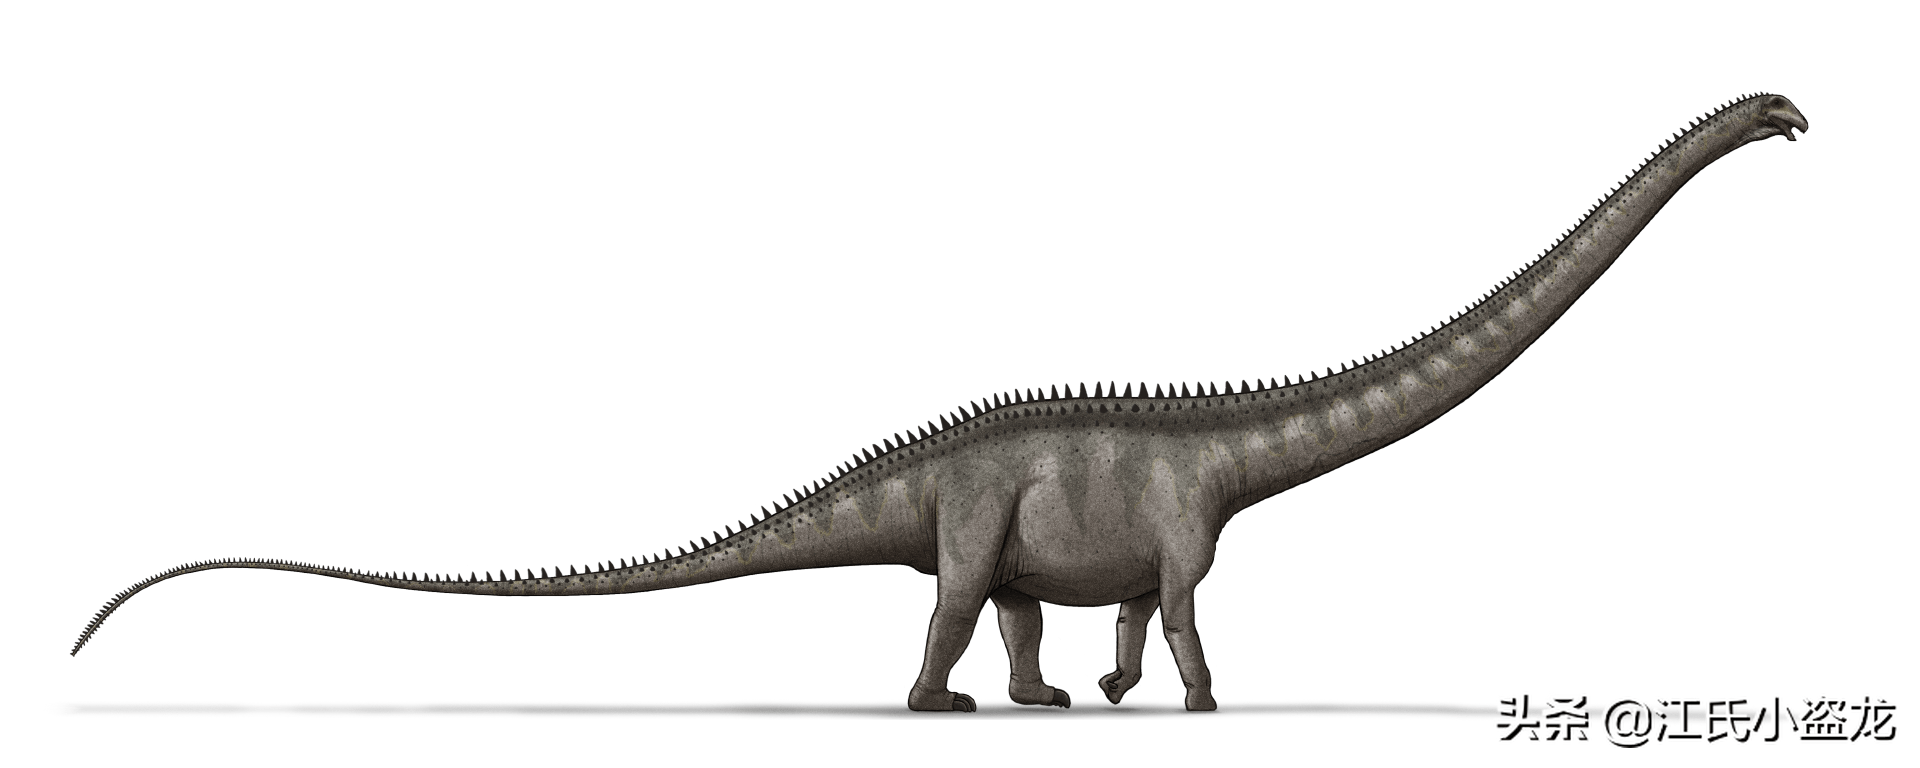 最长恐龙体长42米!超过蓝鲸